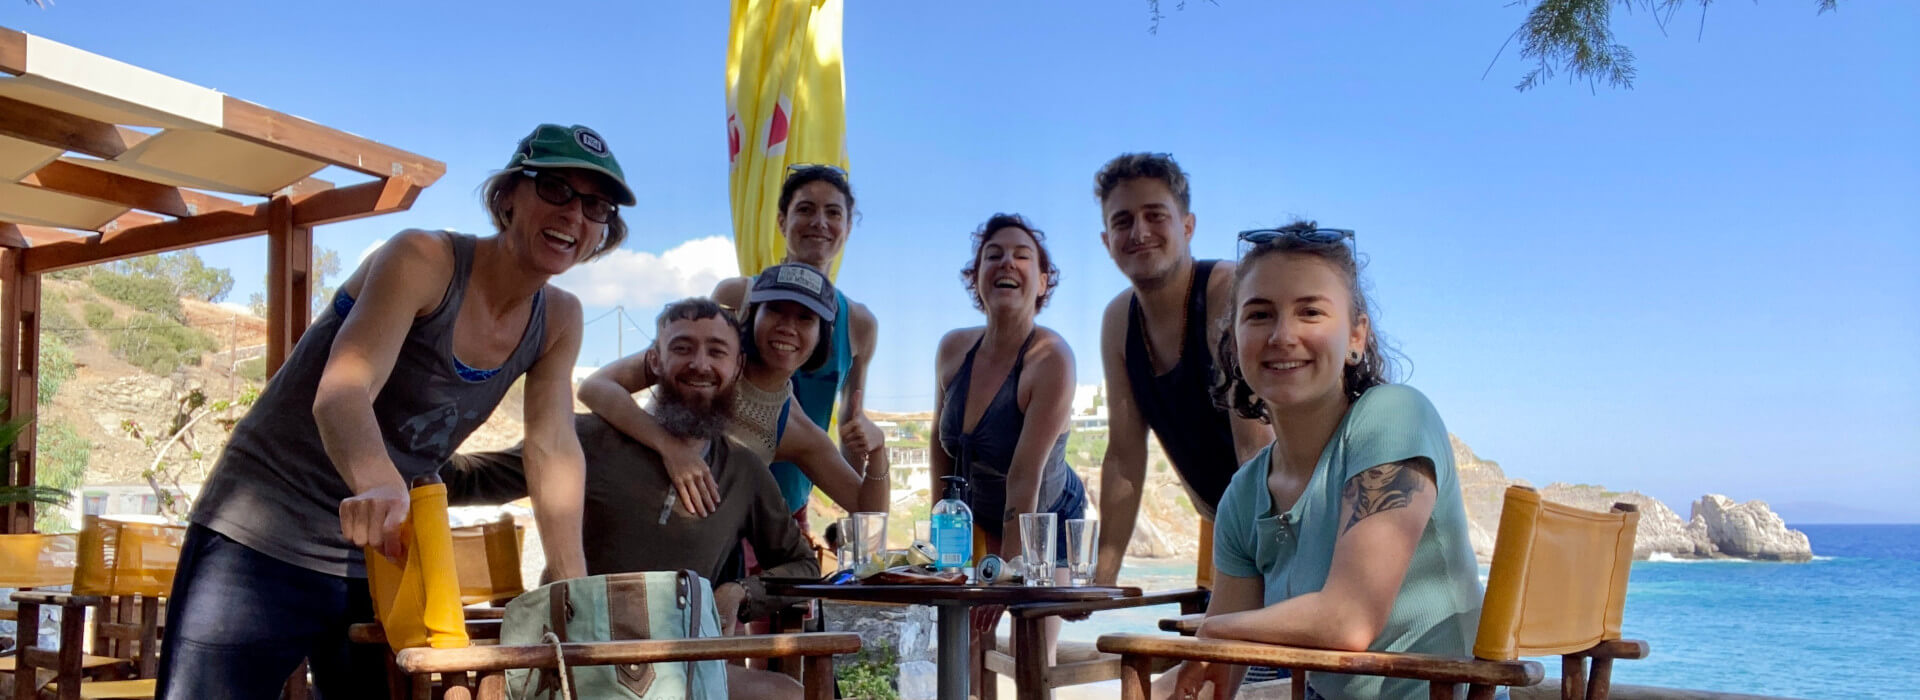 The team at Agios Pavlos beach and beach bar